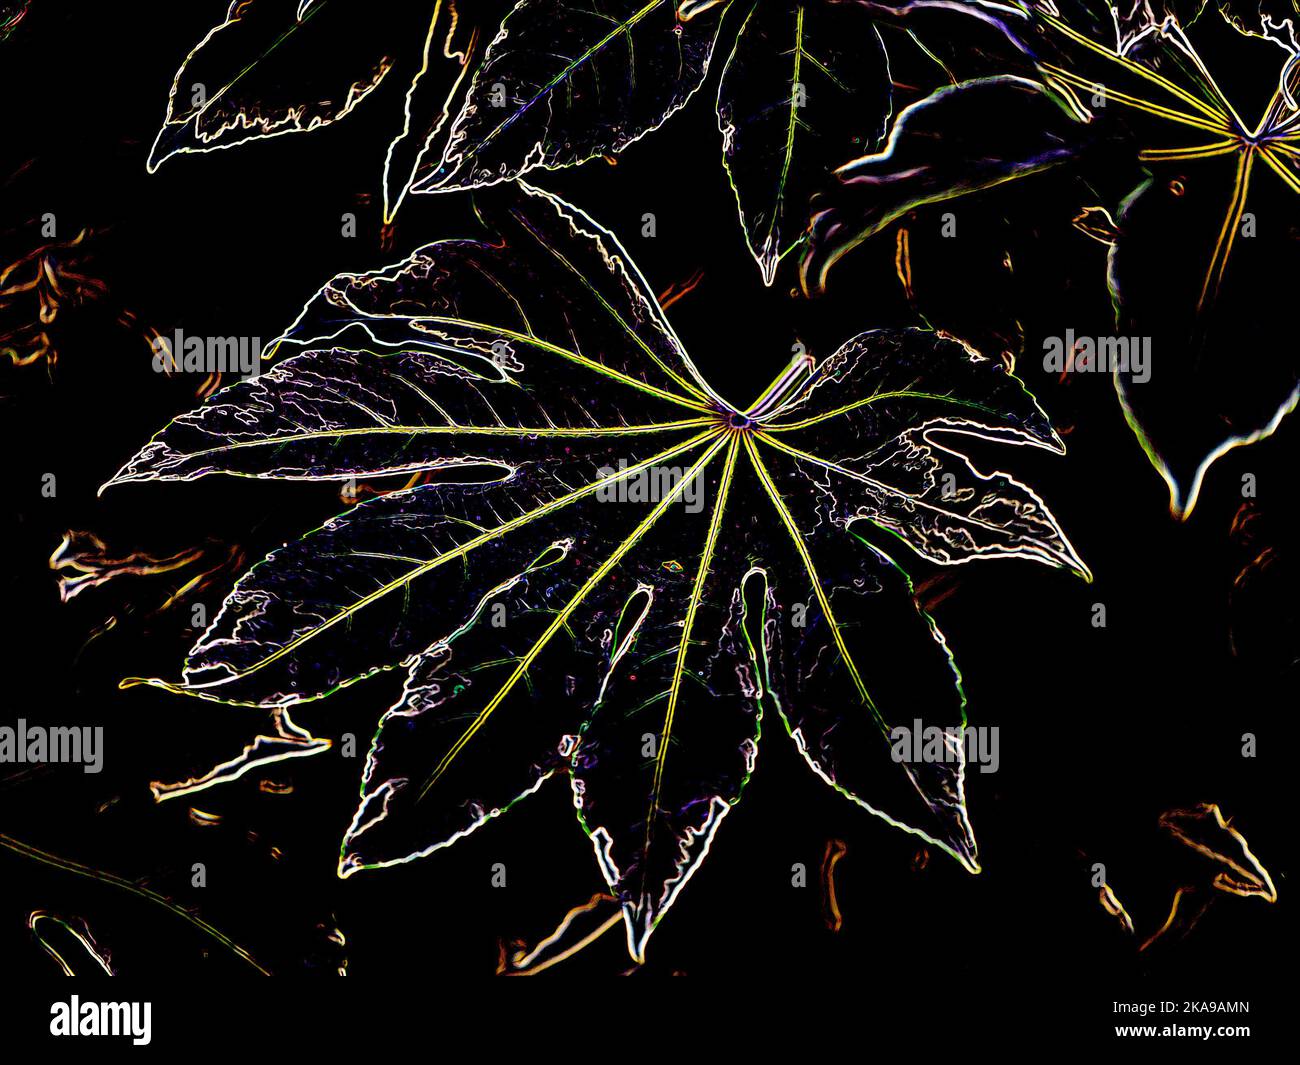 Illustration d'une interprétation moderne des feuilles de la plante de jardin à feuilles persistantes Fatsia japonica Variegata. Banque D'Images